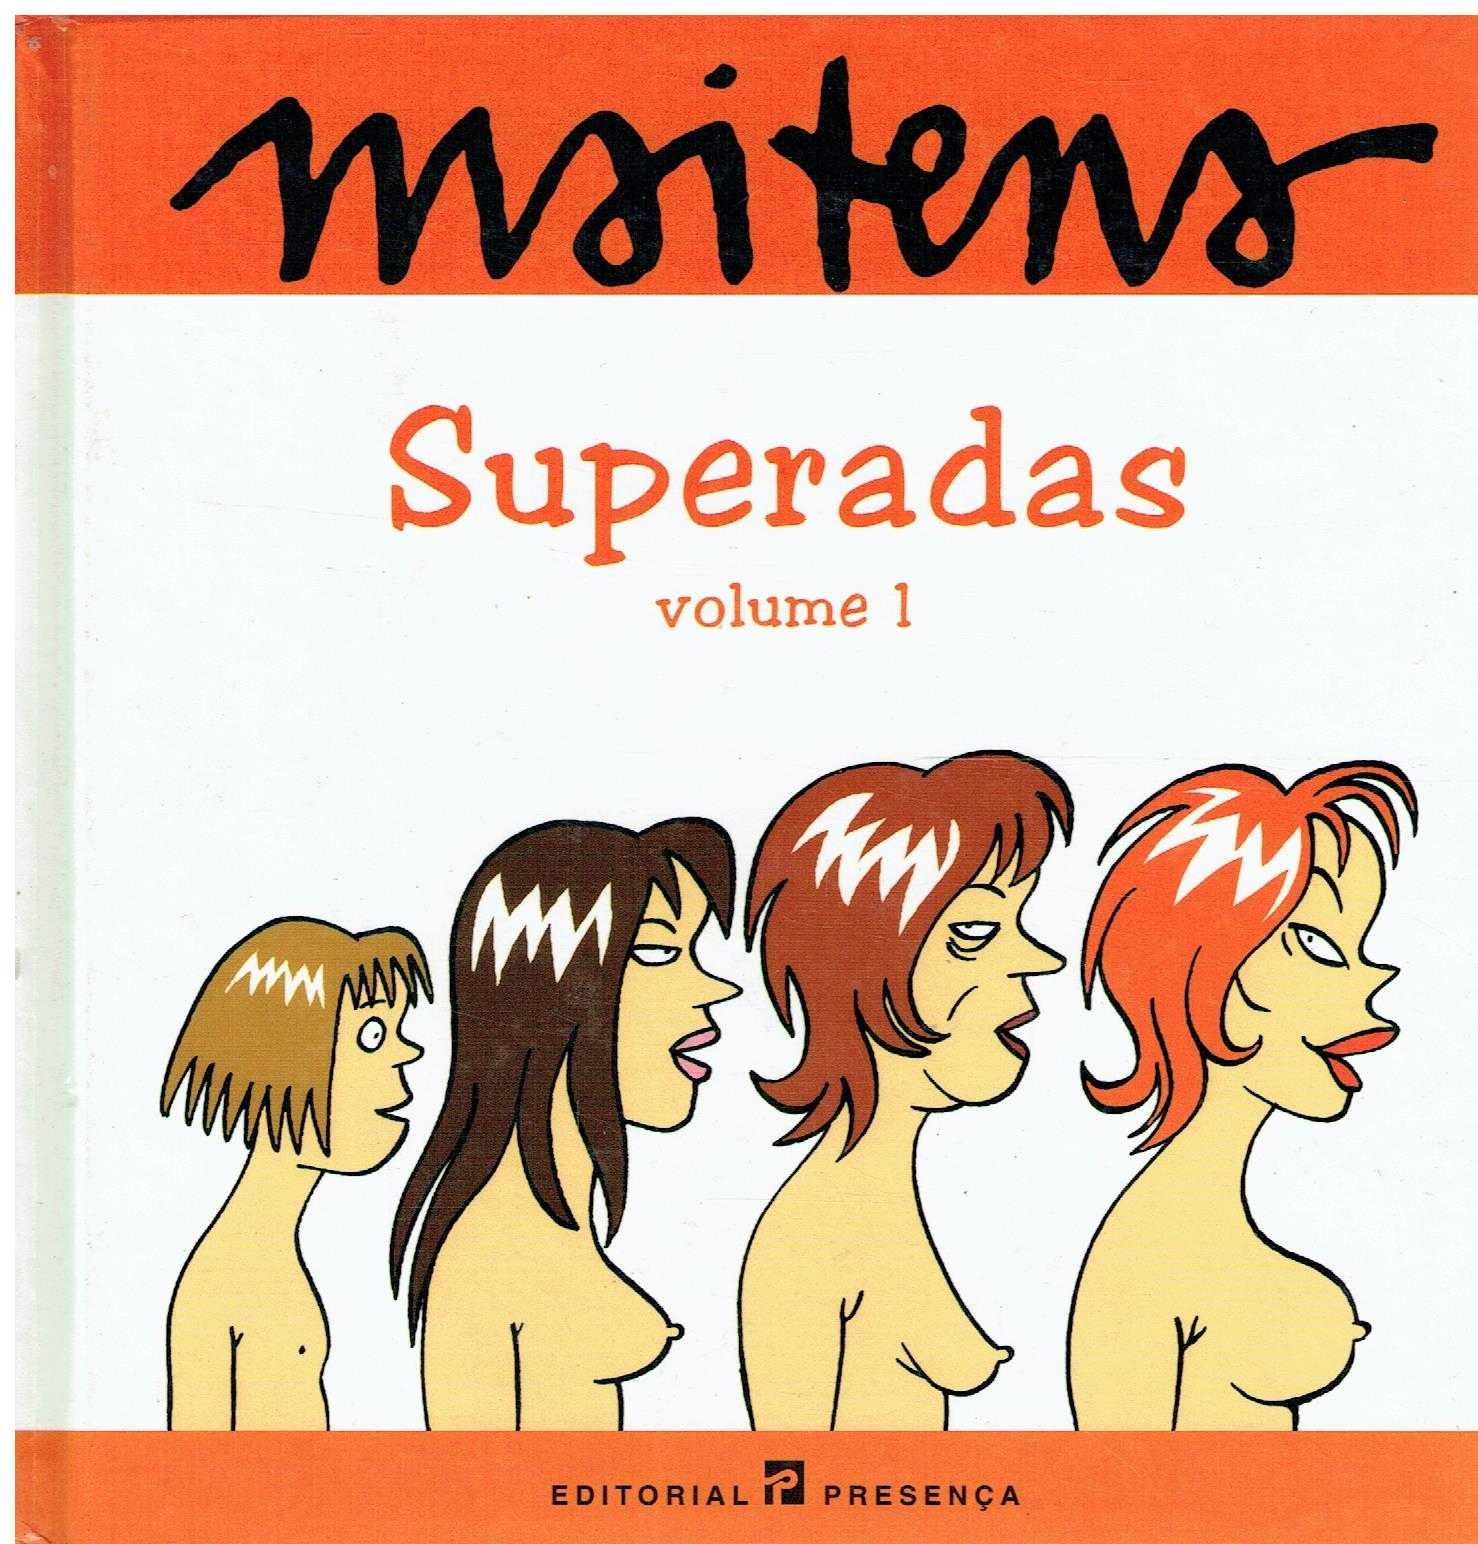 8050

Superadas - Volume 1
de Maitena